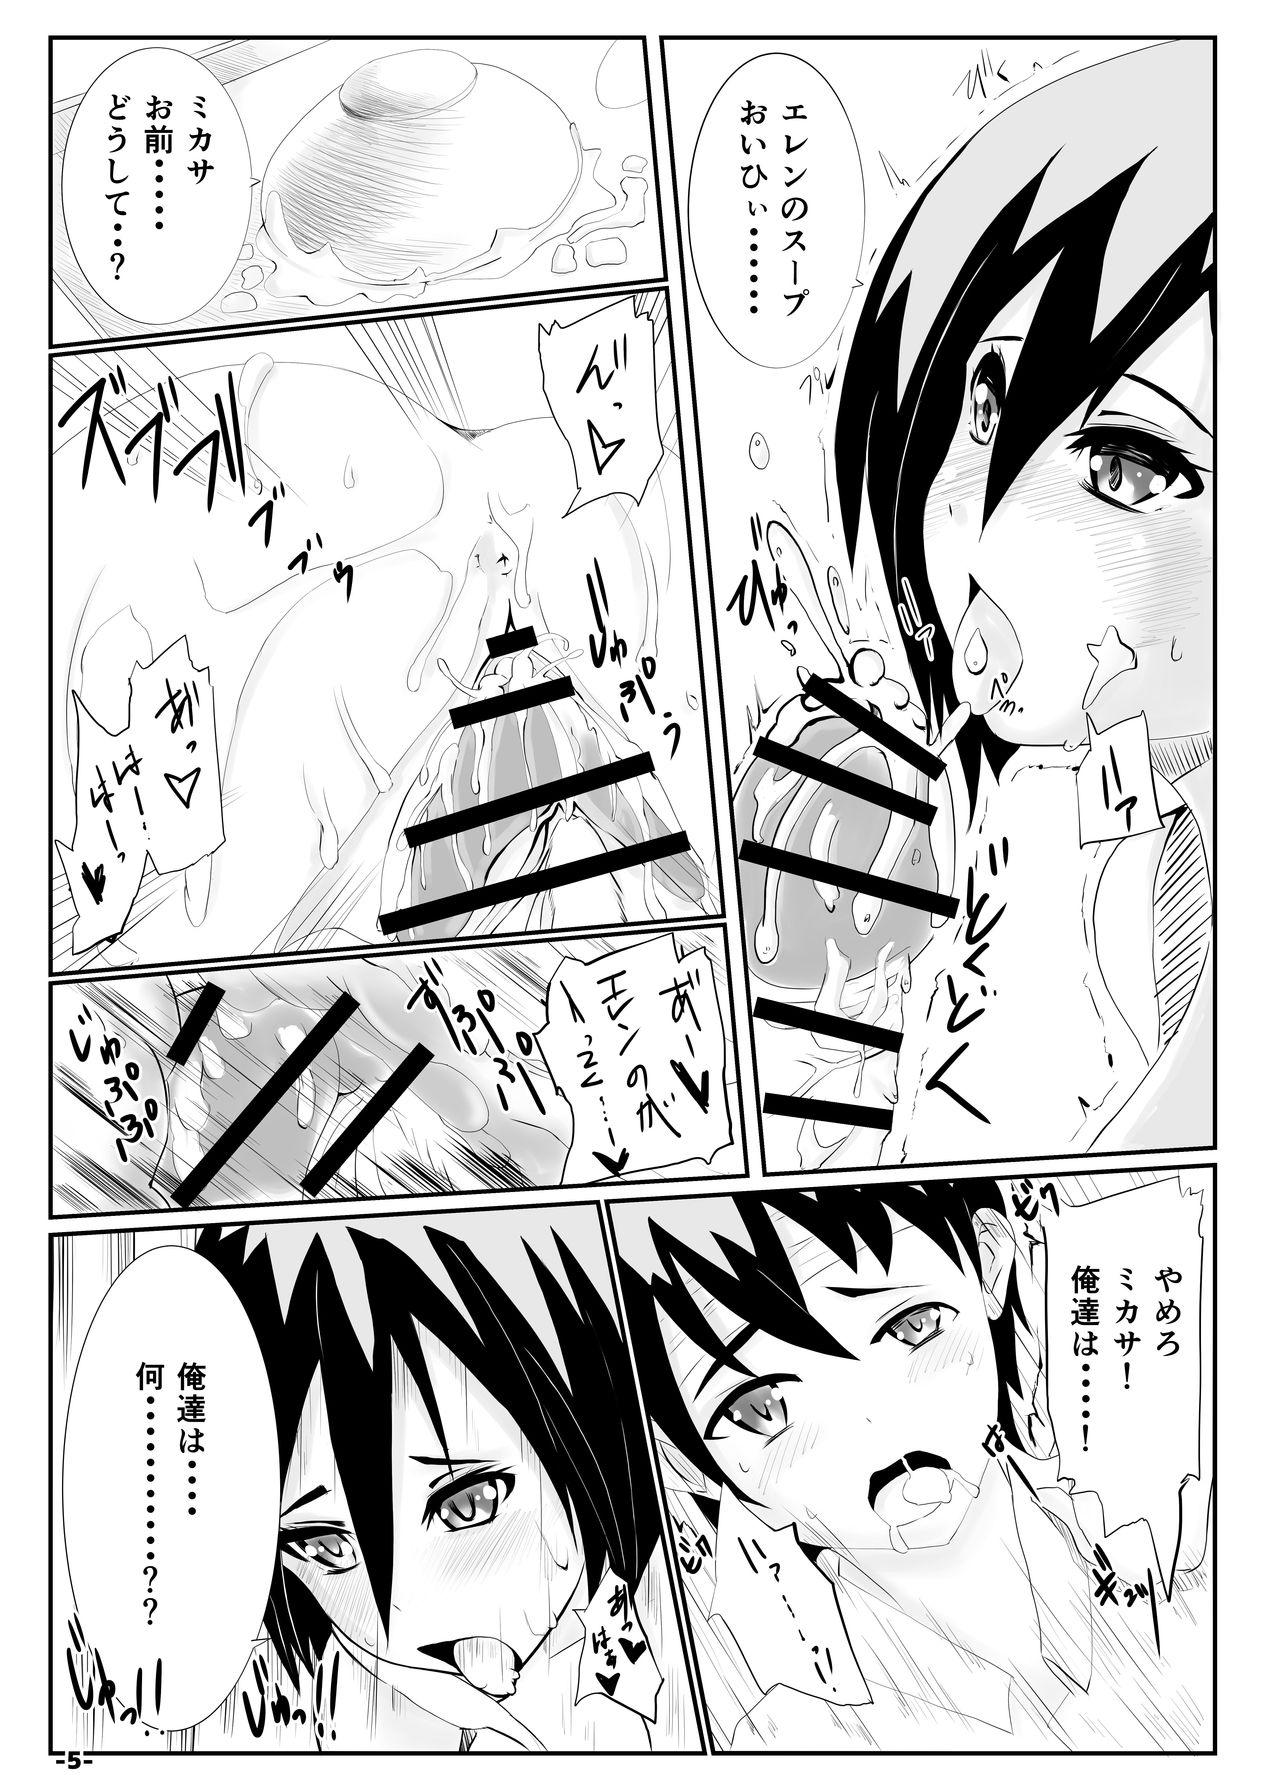 Work Kyuuai no Mikasa - Shingeki no kyojin Arabe - Page 4